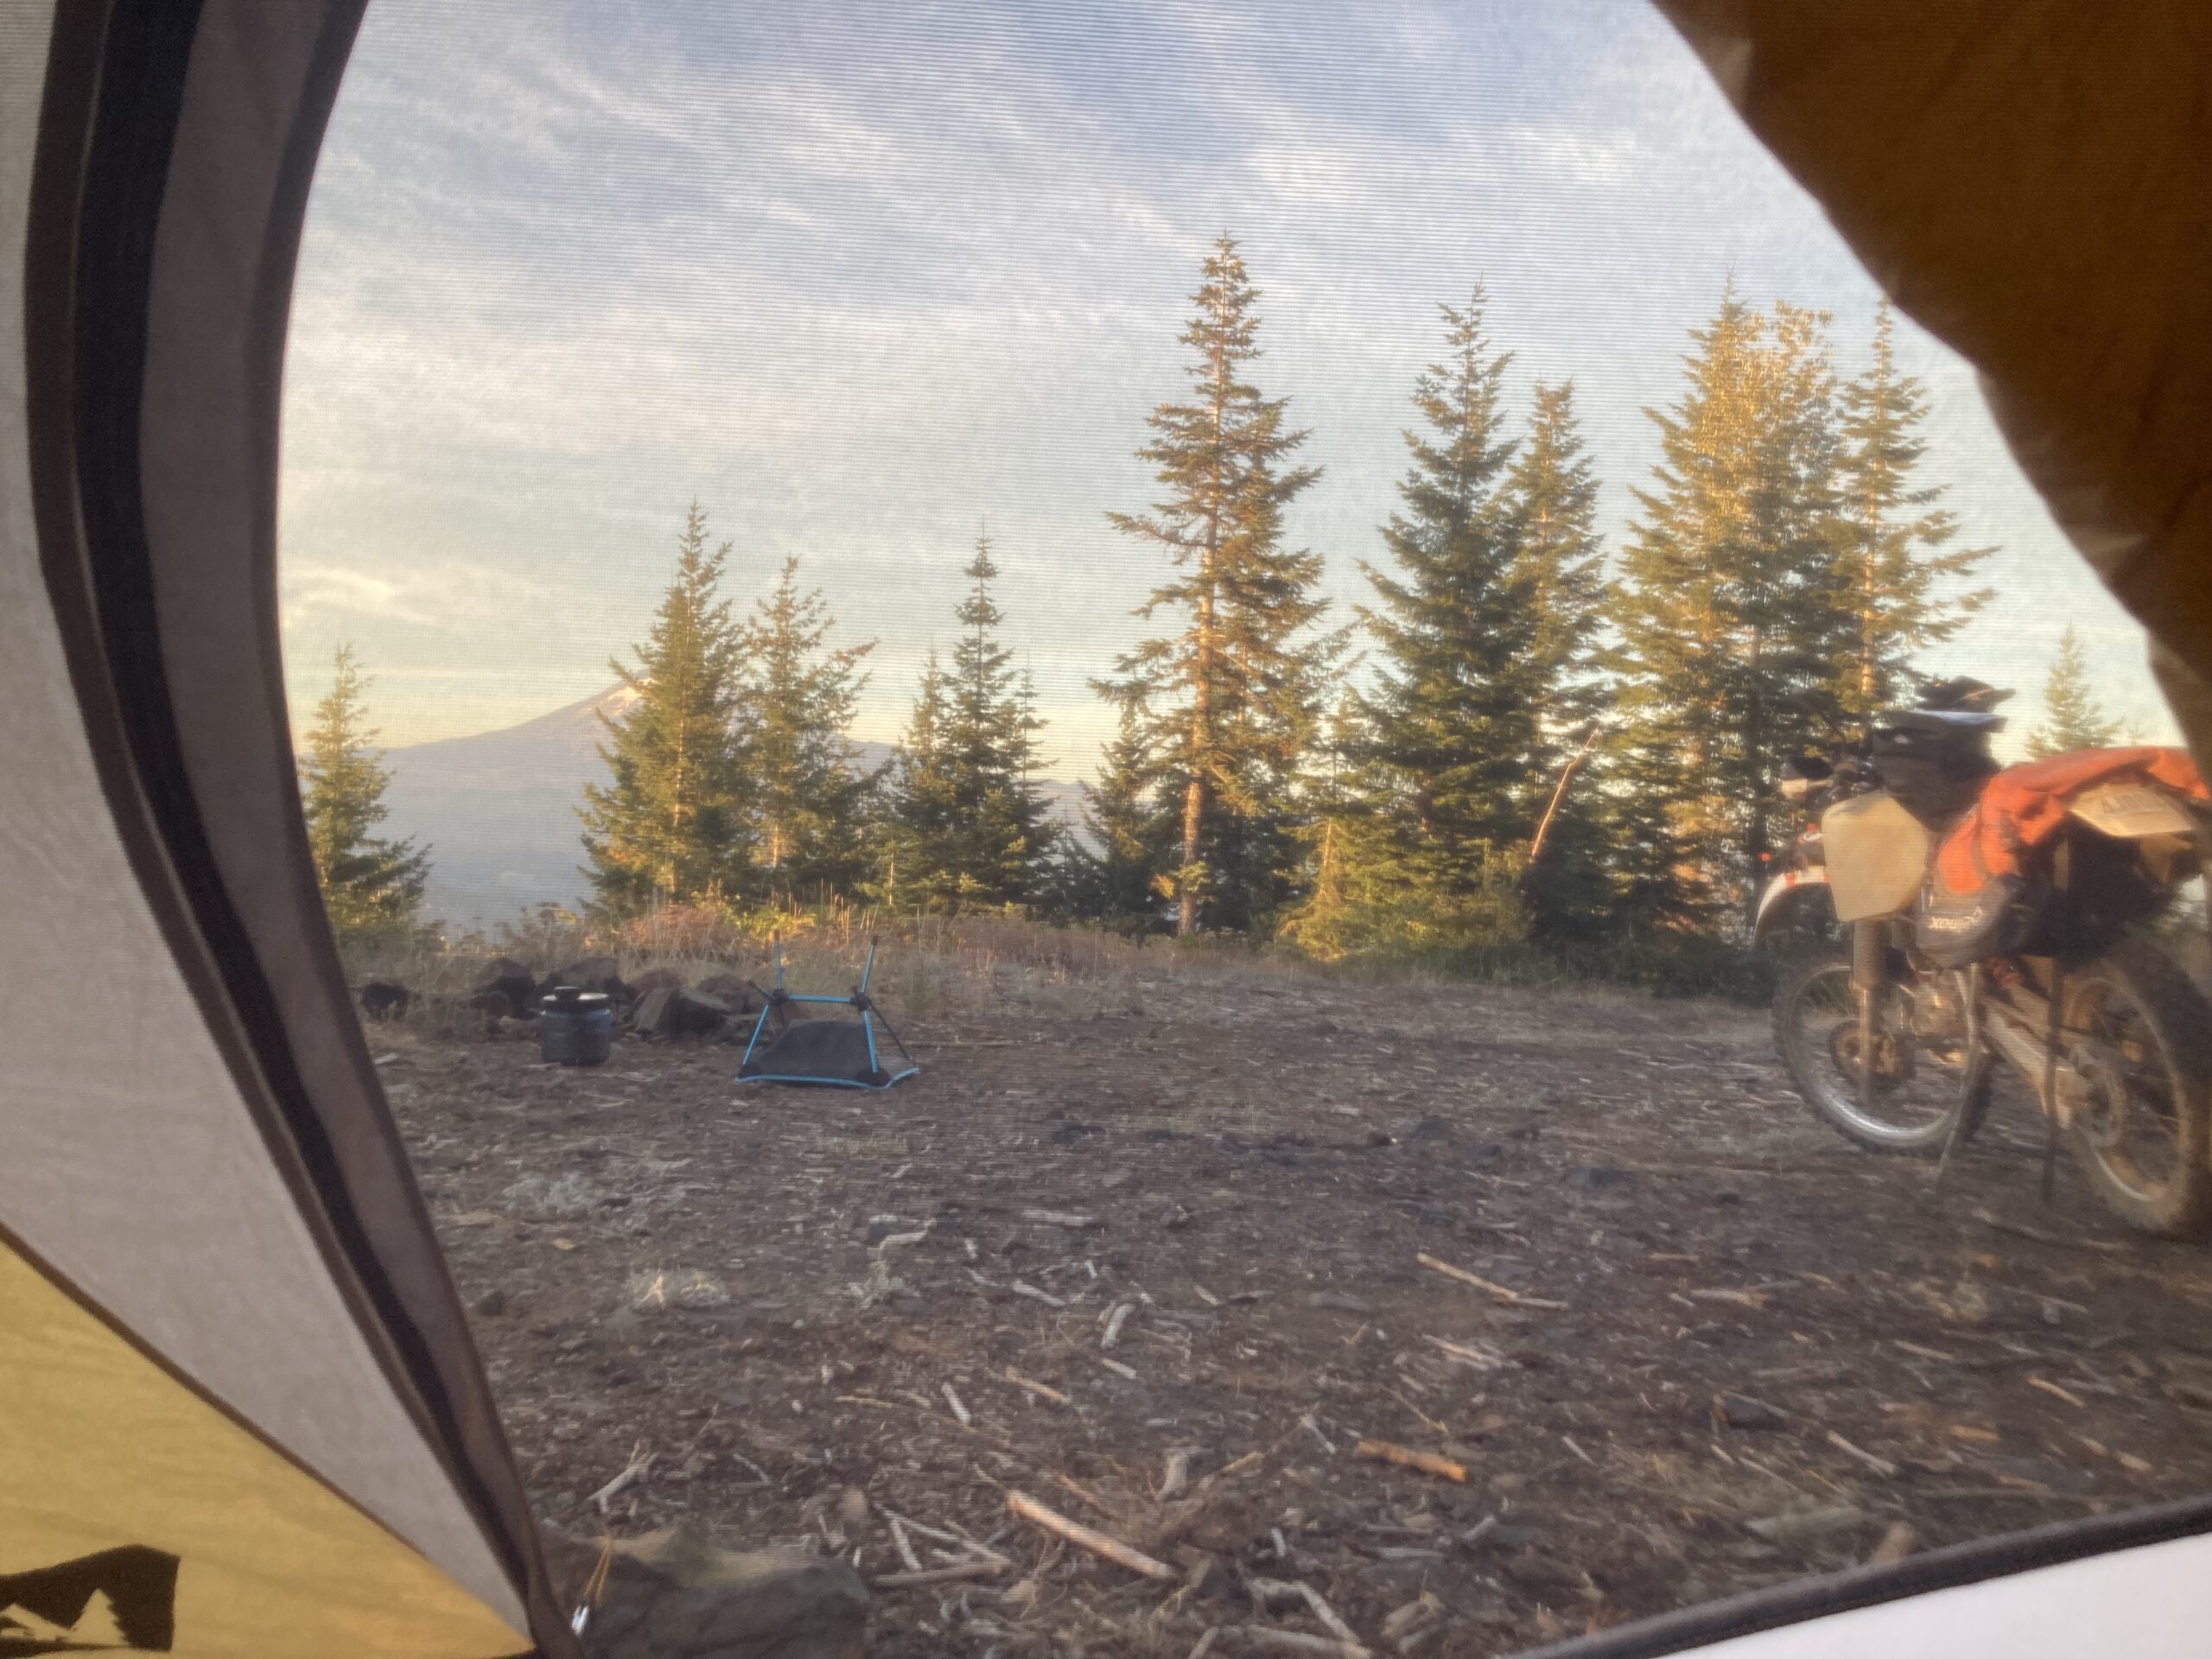 Camped near Mt. Adams